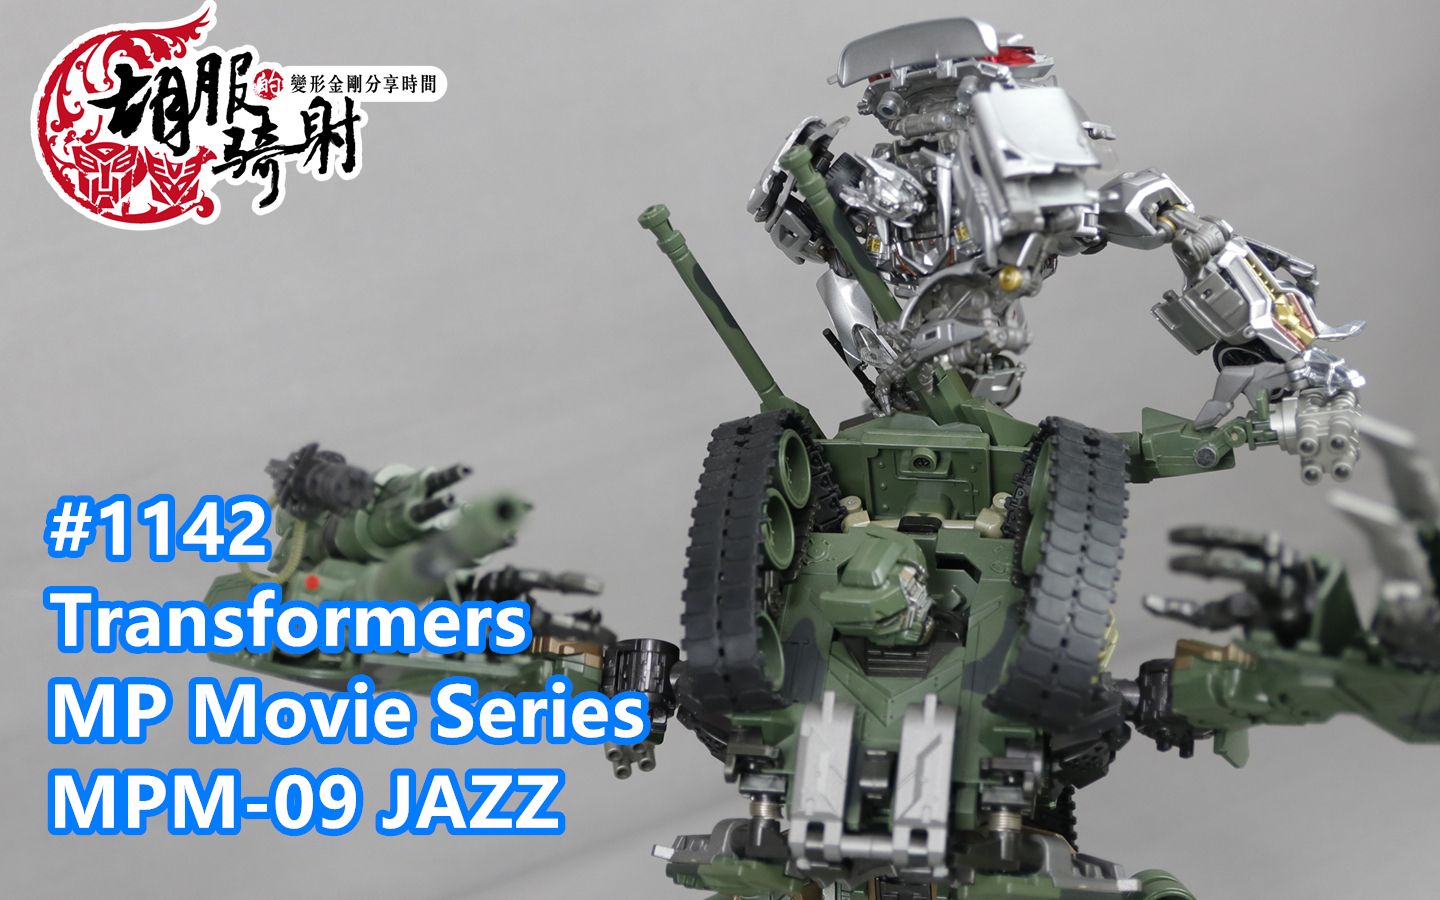 胡服骑射的变形金刚分享时间1142集 Transformers MP Movie Series MPM-09 JAZZ 真人电影 杰作 爵士